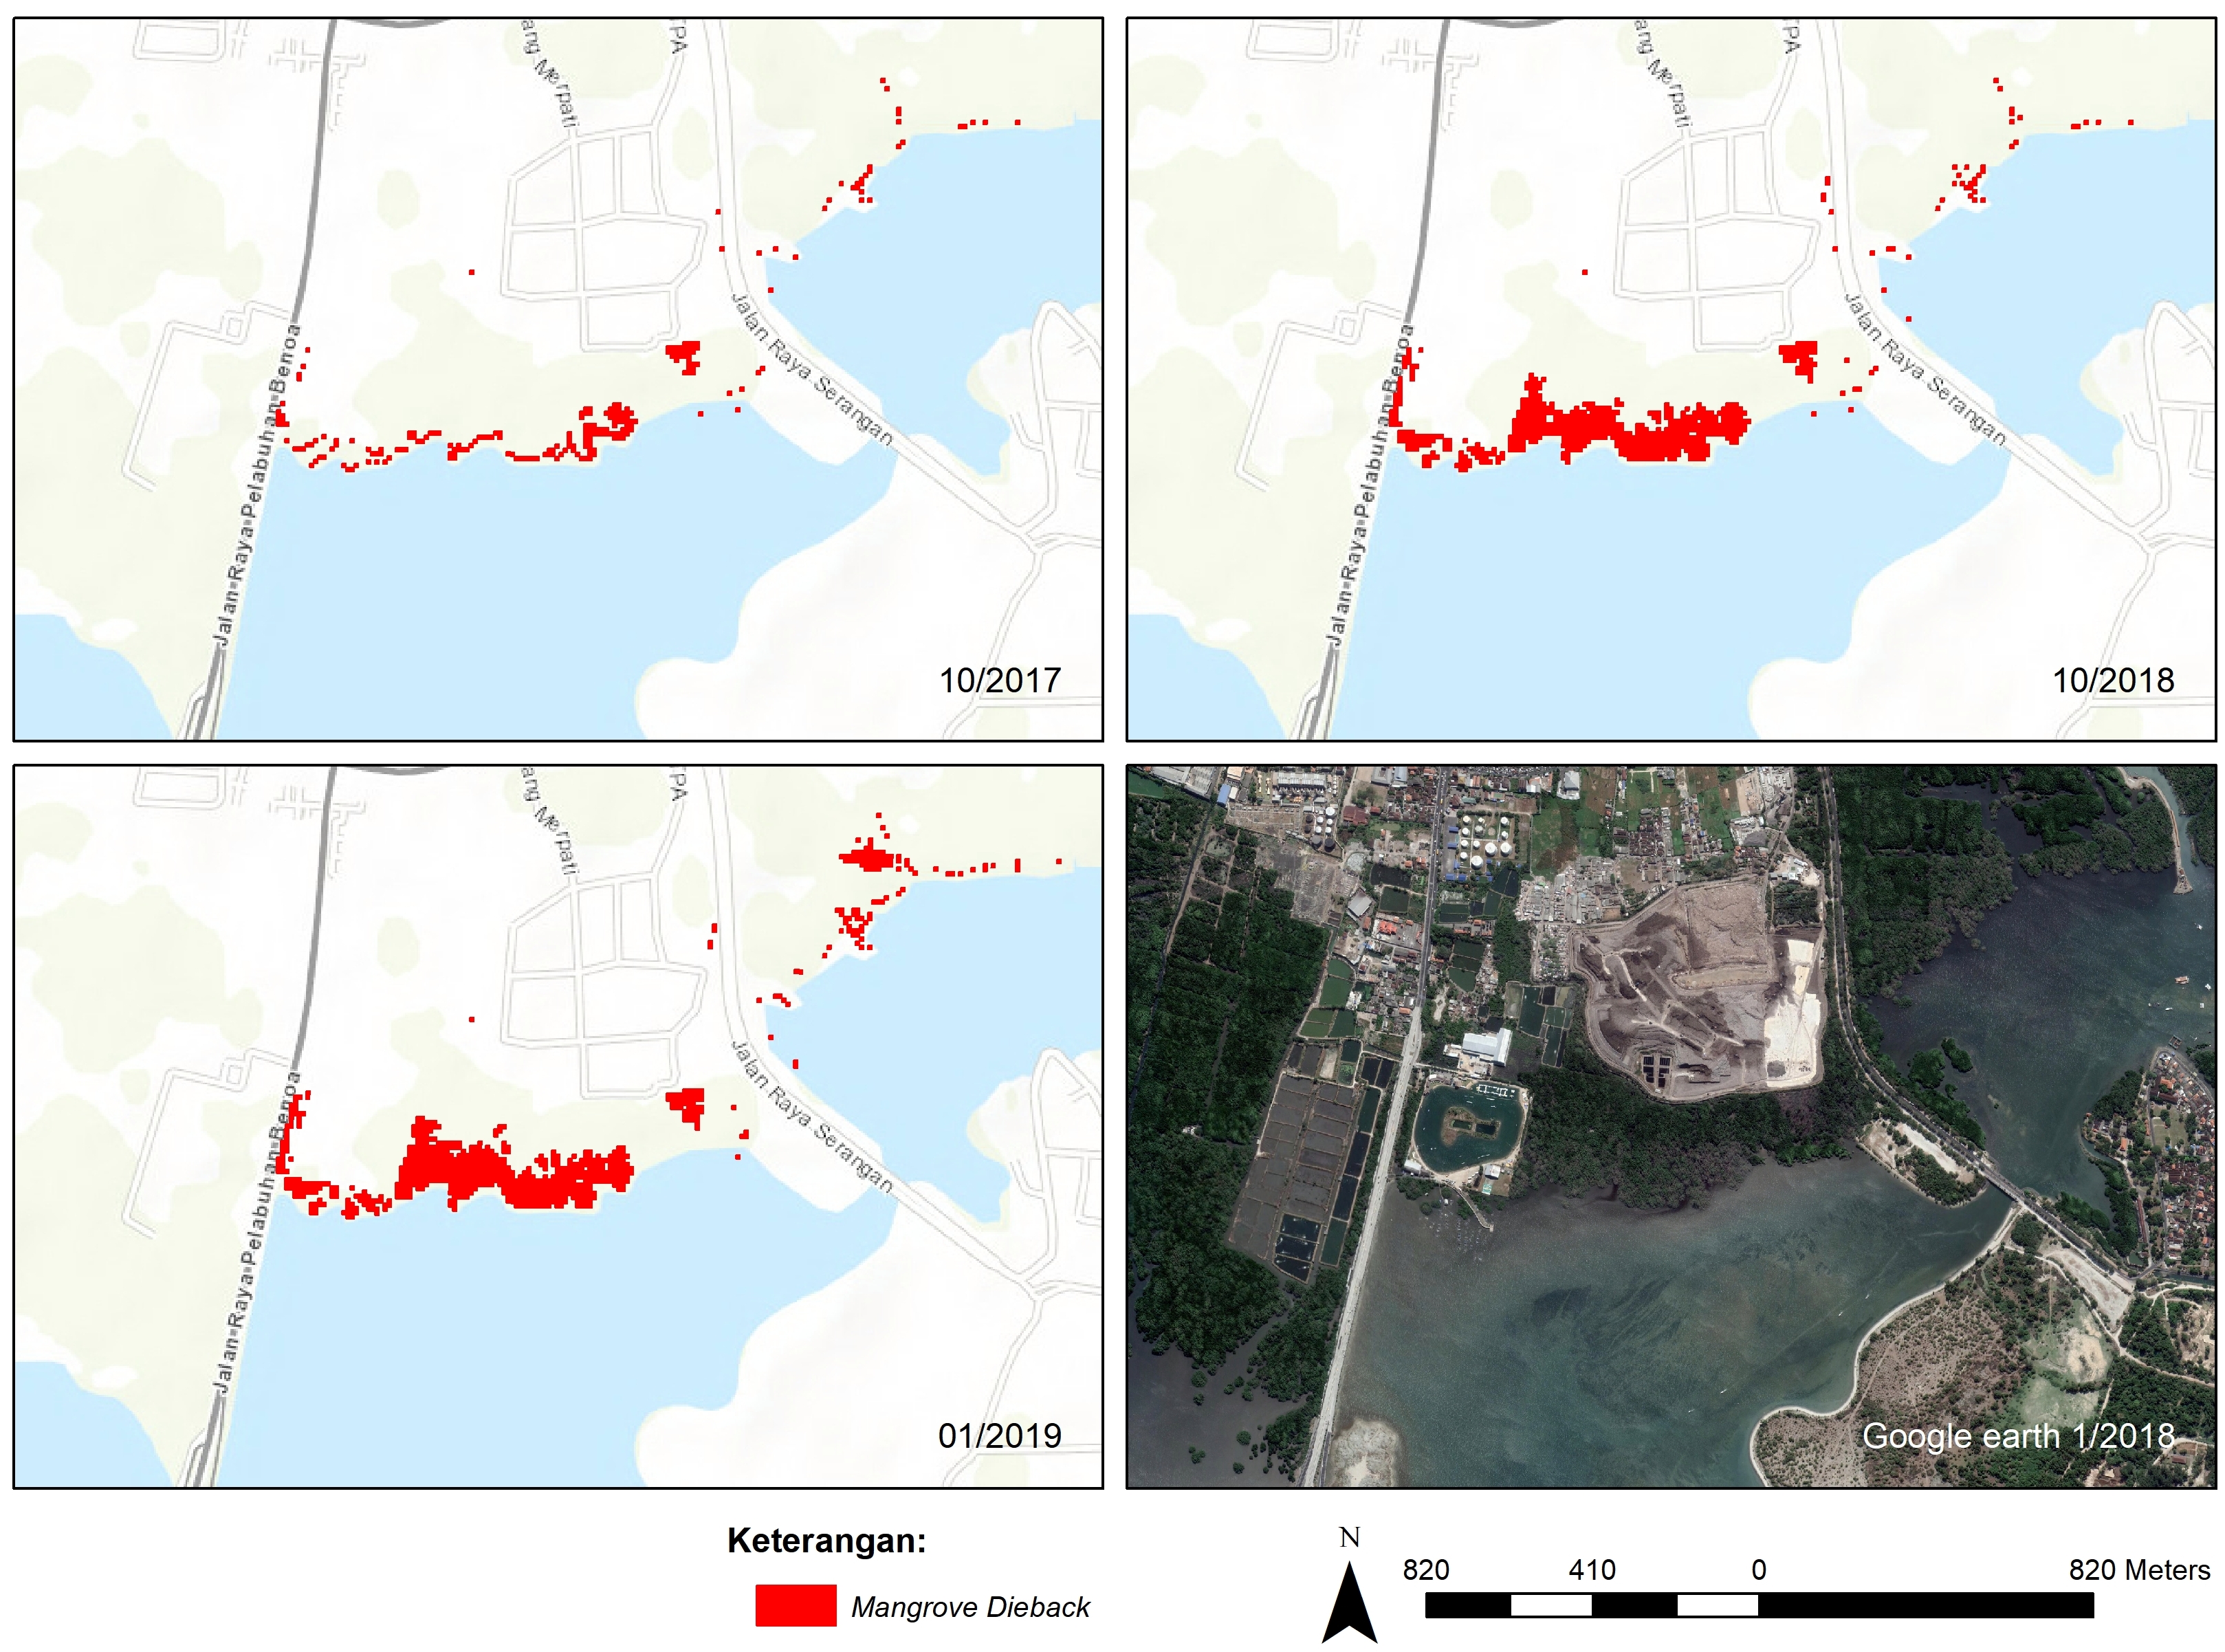 Hasil pemantauan mangrove dieback dari tahun 2017 hingga 2019 melalui citra satelit Sentinel-2. Didapati bahwa pada tahun 2017 fenomena dieback ternyata sudah terjadi di area tersebut dan setidaknya merusak 2,43 ha area mangrove disana. Pada tahun 2018, area tersebut meluas hingga 7,41 ha, kemudian pada awal Januari sudah terdeteksi menjadi 8,95 ha. Foto : Sentinel/Mongabay Indonesia